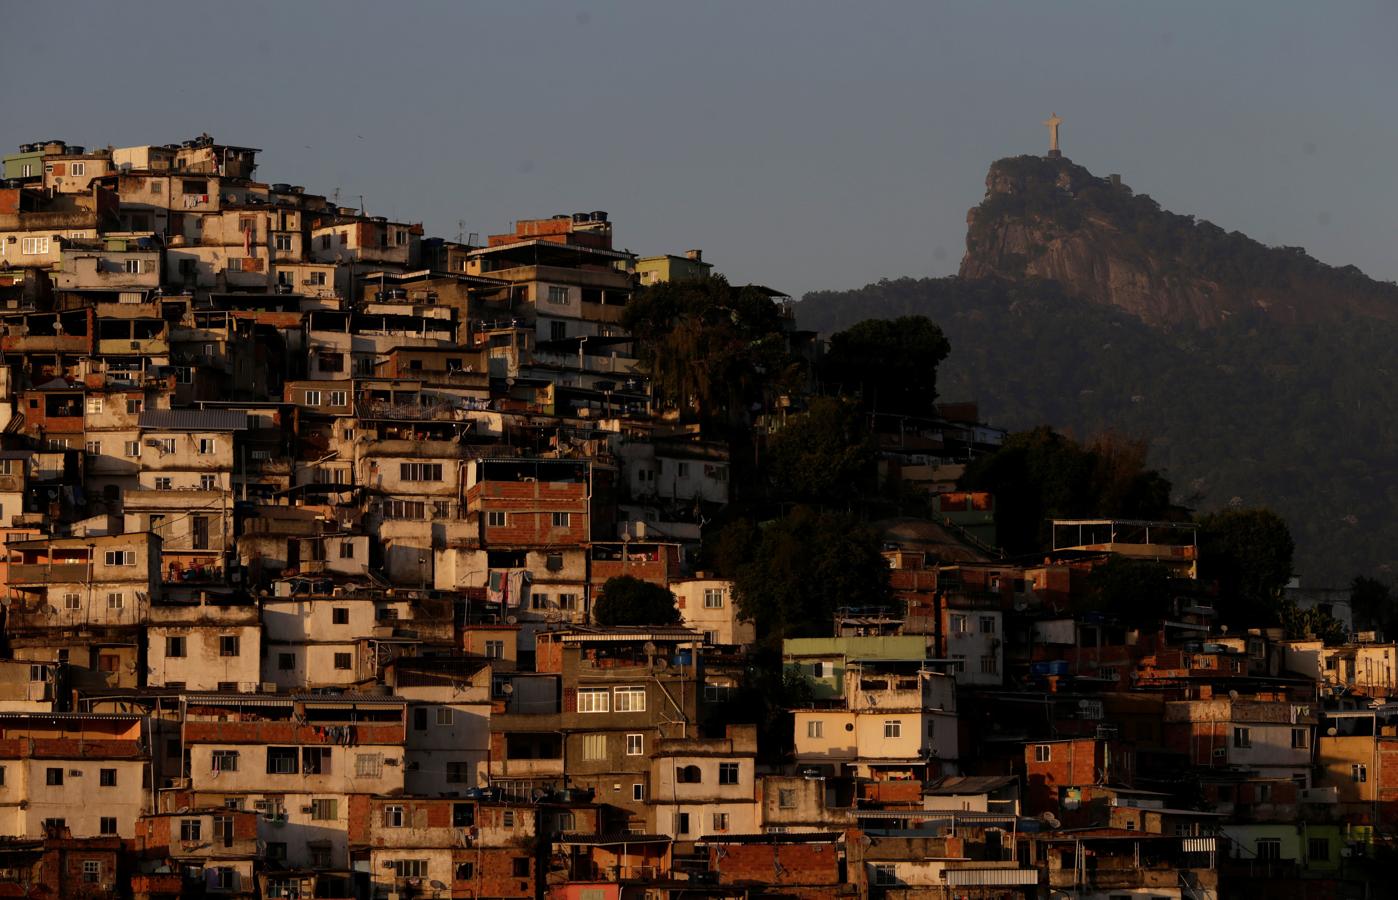 Vidas difíciles en las favelas. Primer plano de Morro da Coroa, favela carioca pertencente al Complexo de Santa Teresa